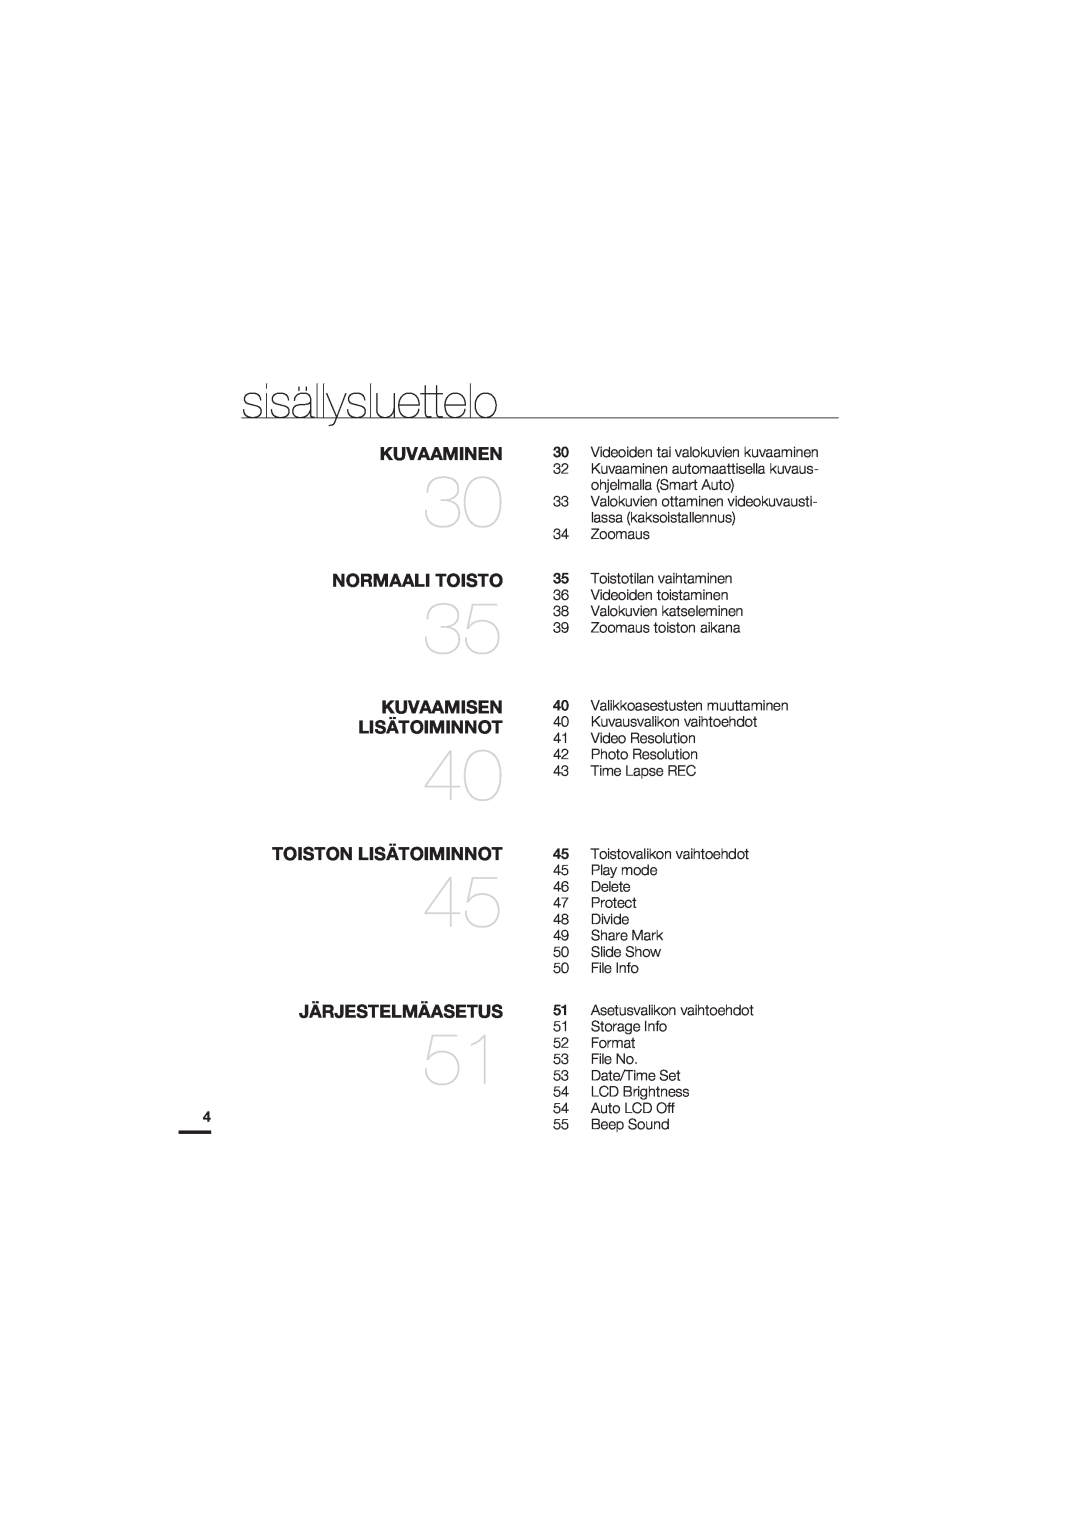 Samsung HMX-U20BP/EDC manual Kuvaaminen, Normaali Toisto, Kuvaamisen, Toiston Lisätoiminnot, Järjestelmäasetus 